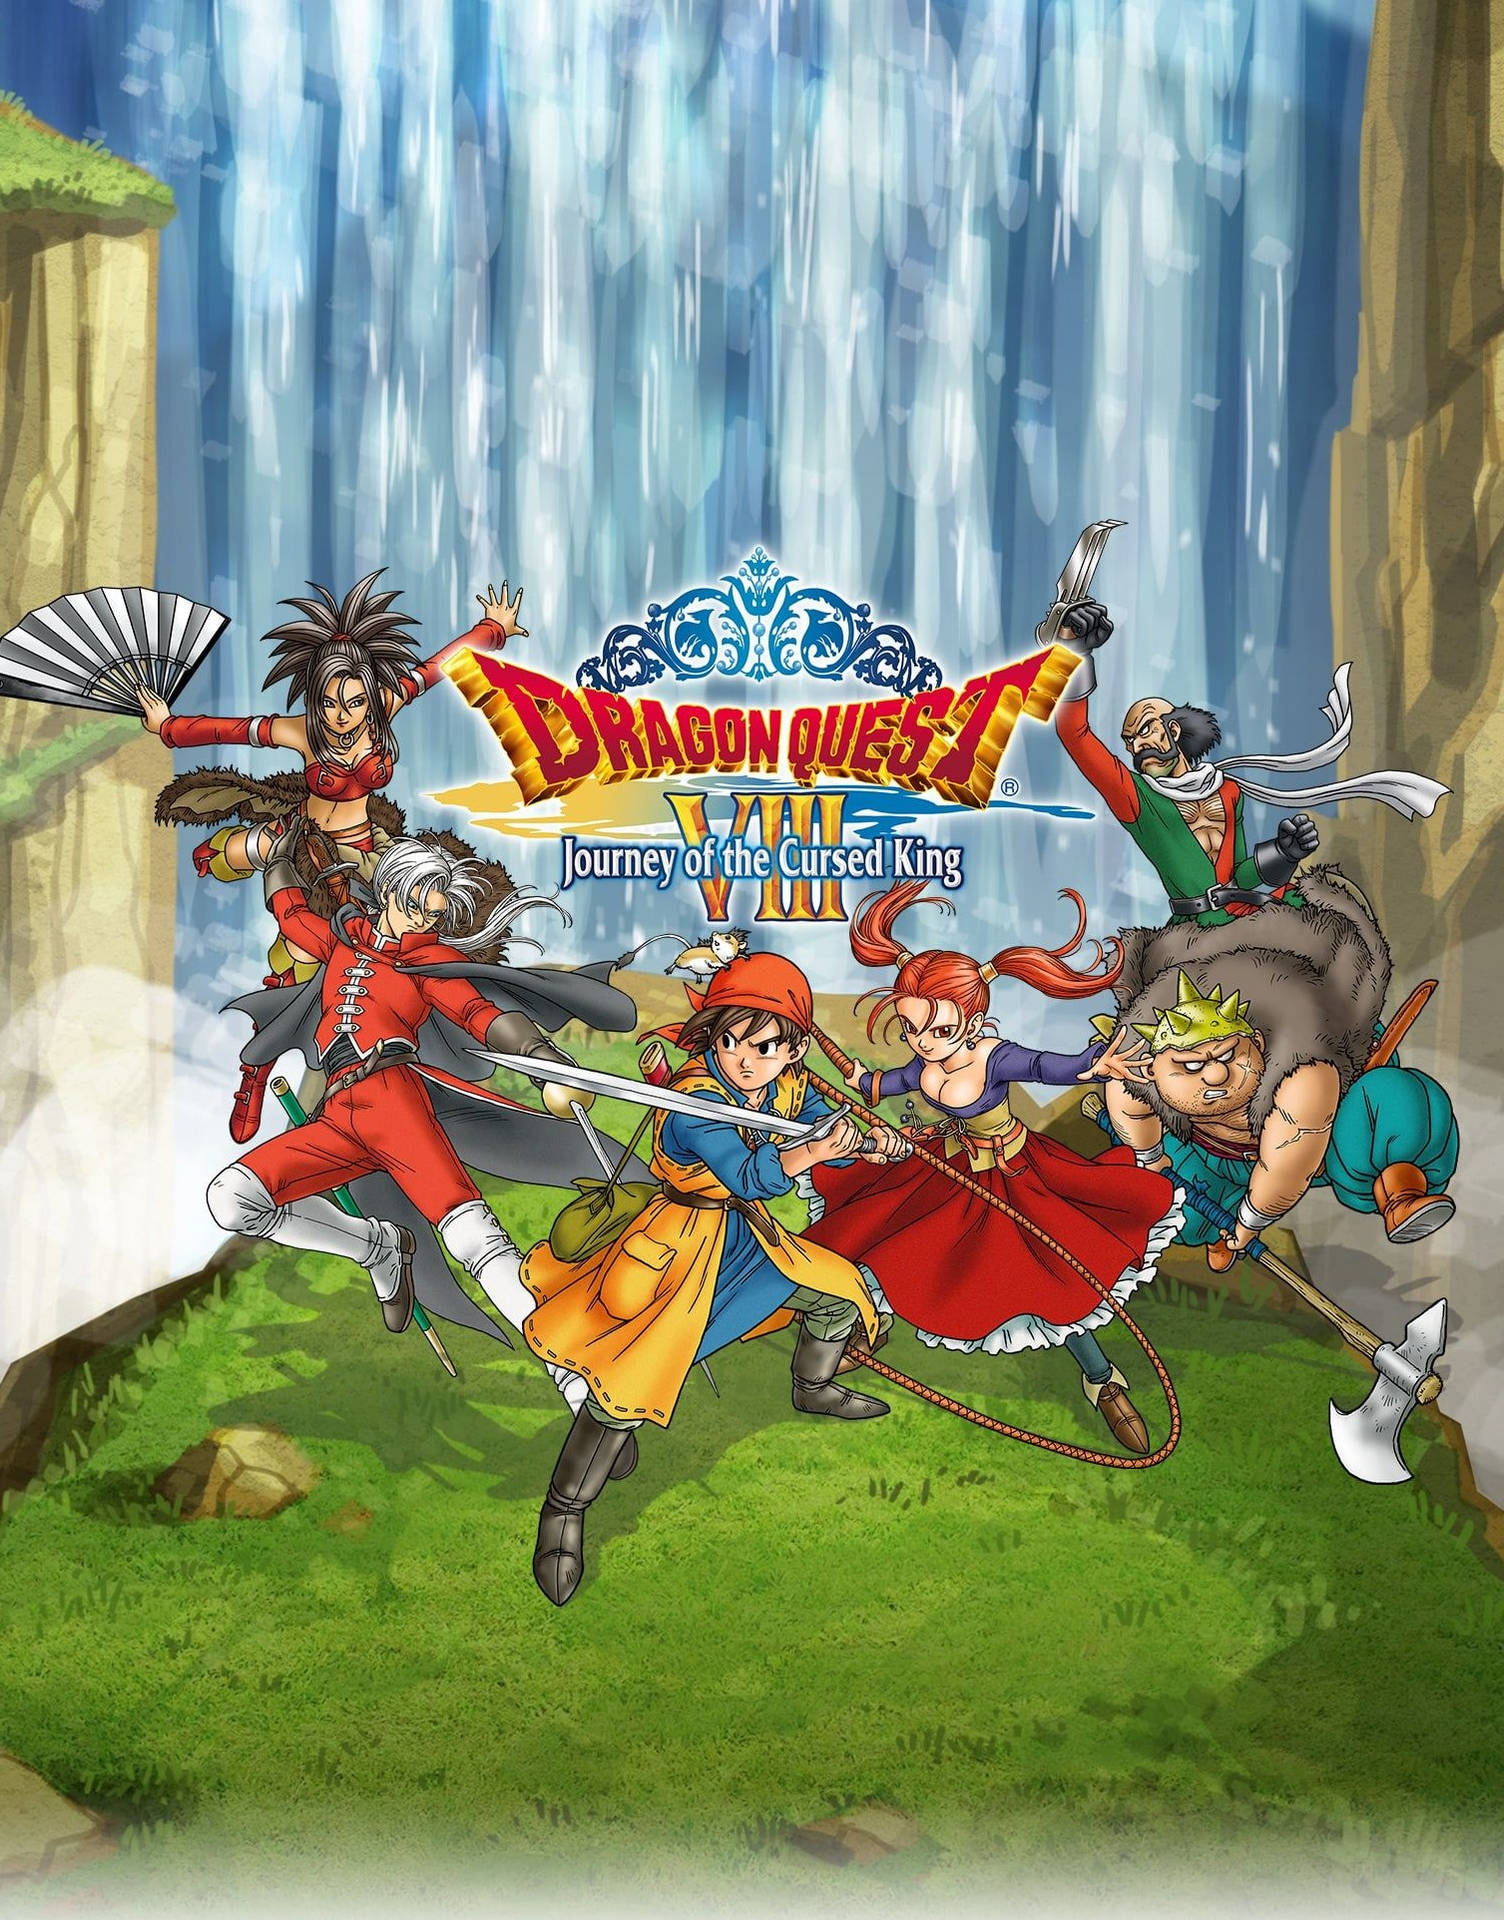 Sammledie Belohnungen Des Abenteuers Im Klassischen Spiel, Dragon Quest Iphone. Wallpaper